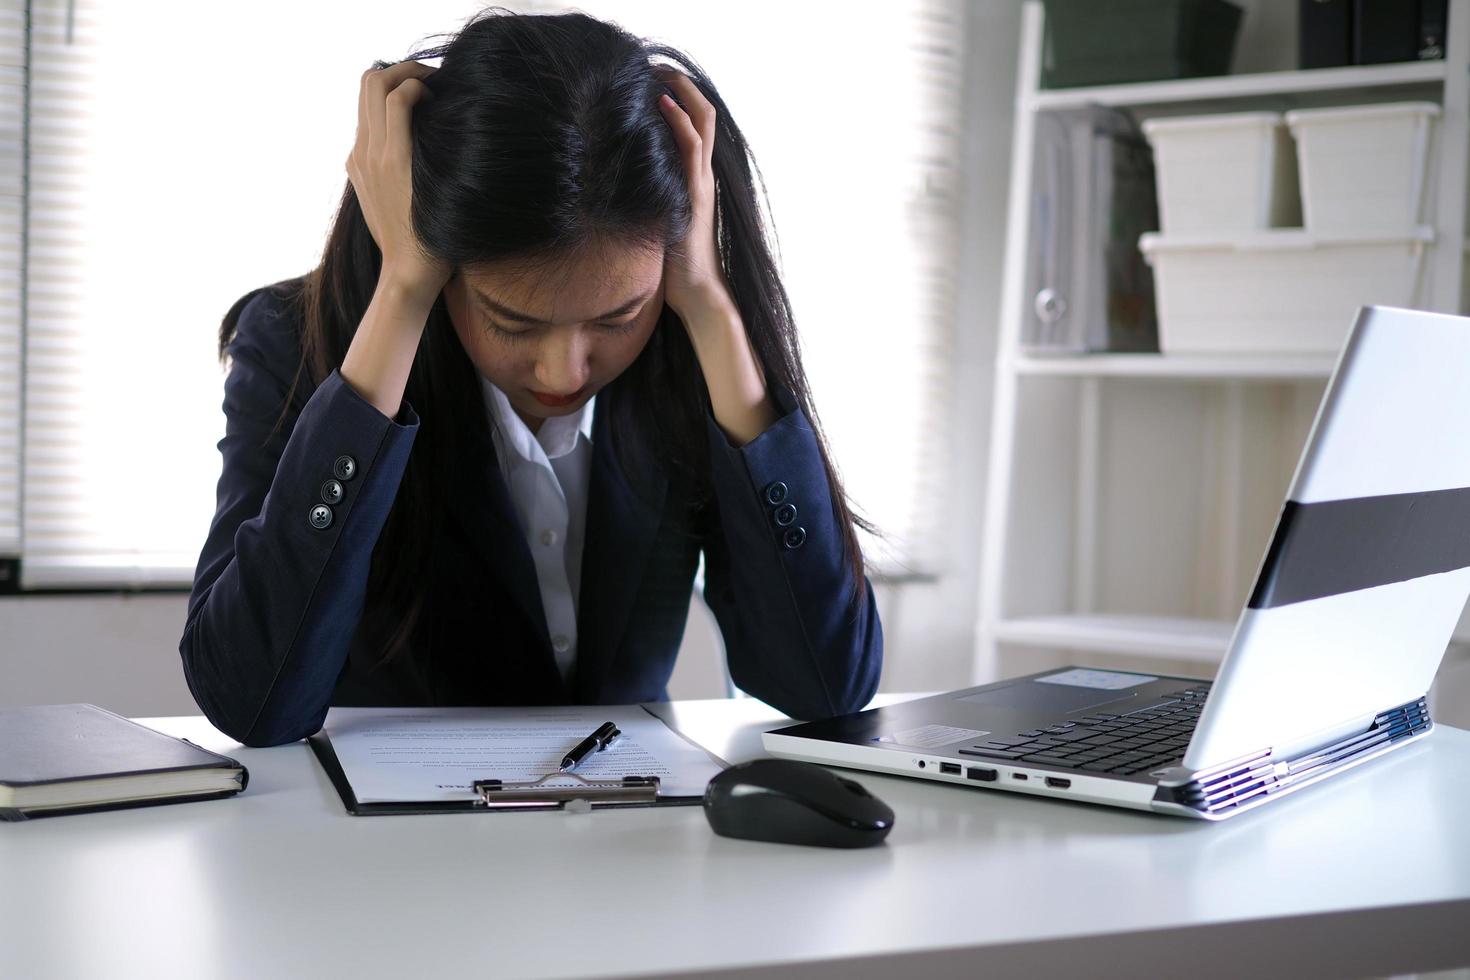 las jóvenes empresarias tienen dolores de cabeza por migraña mientras trabajan en la oficina. foto